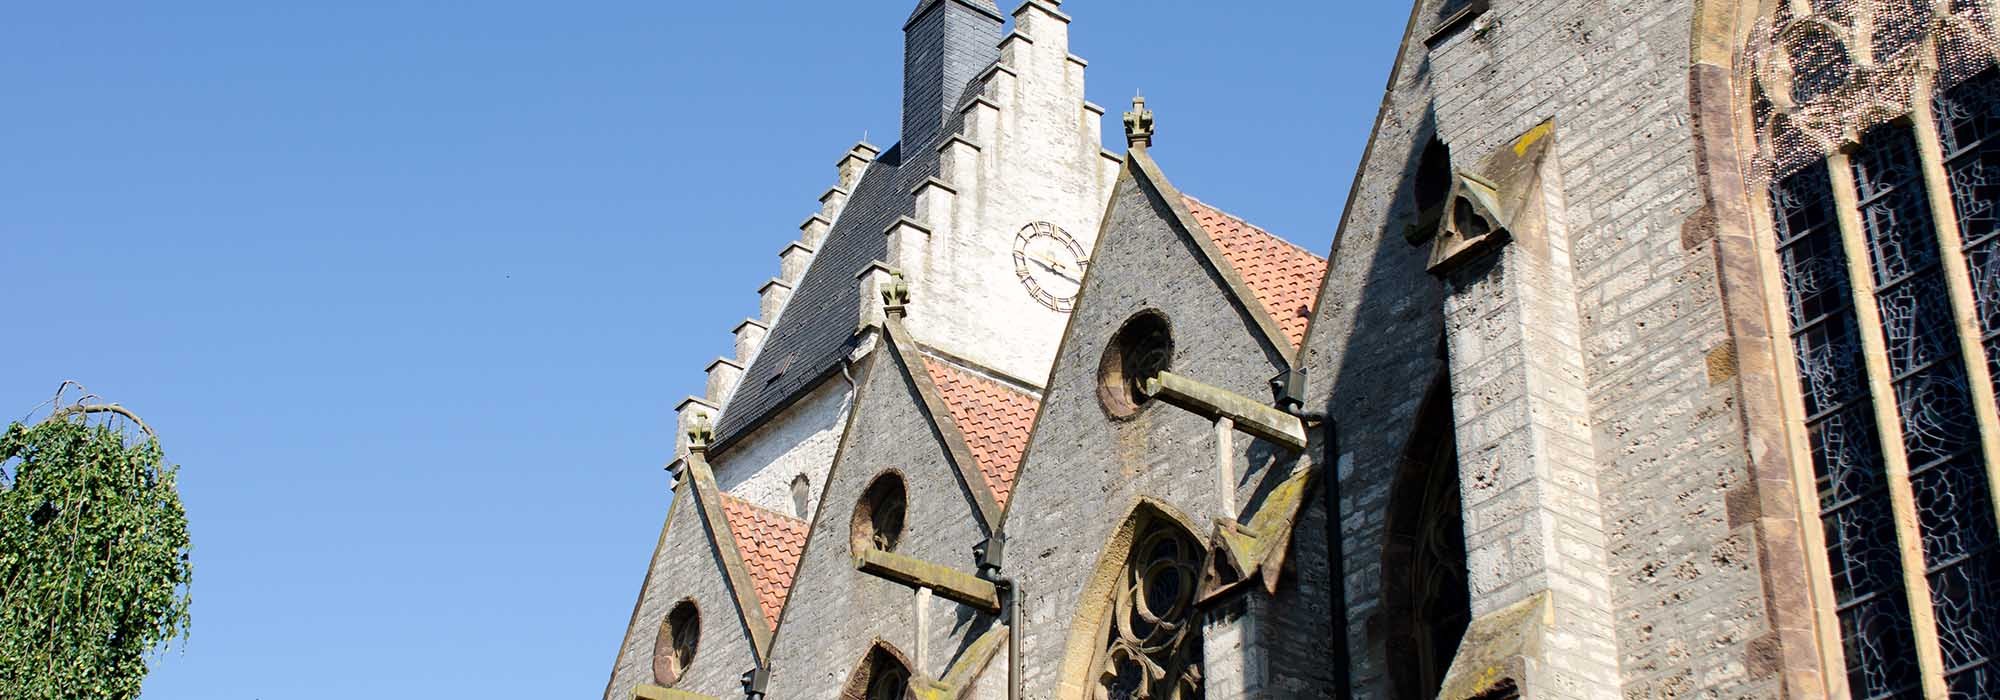 Teilbereich der Kirche unter blauem Himmel